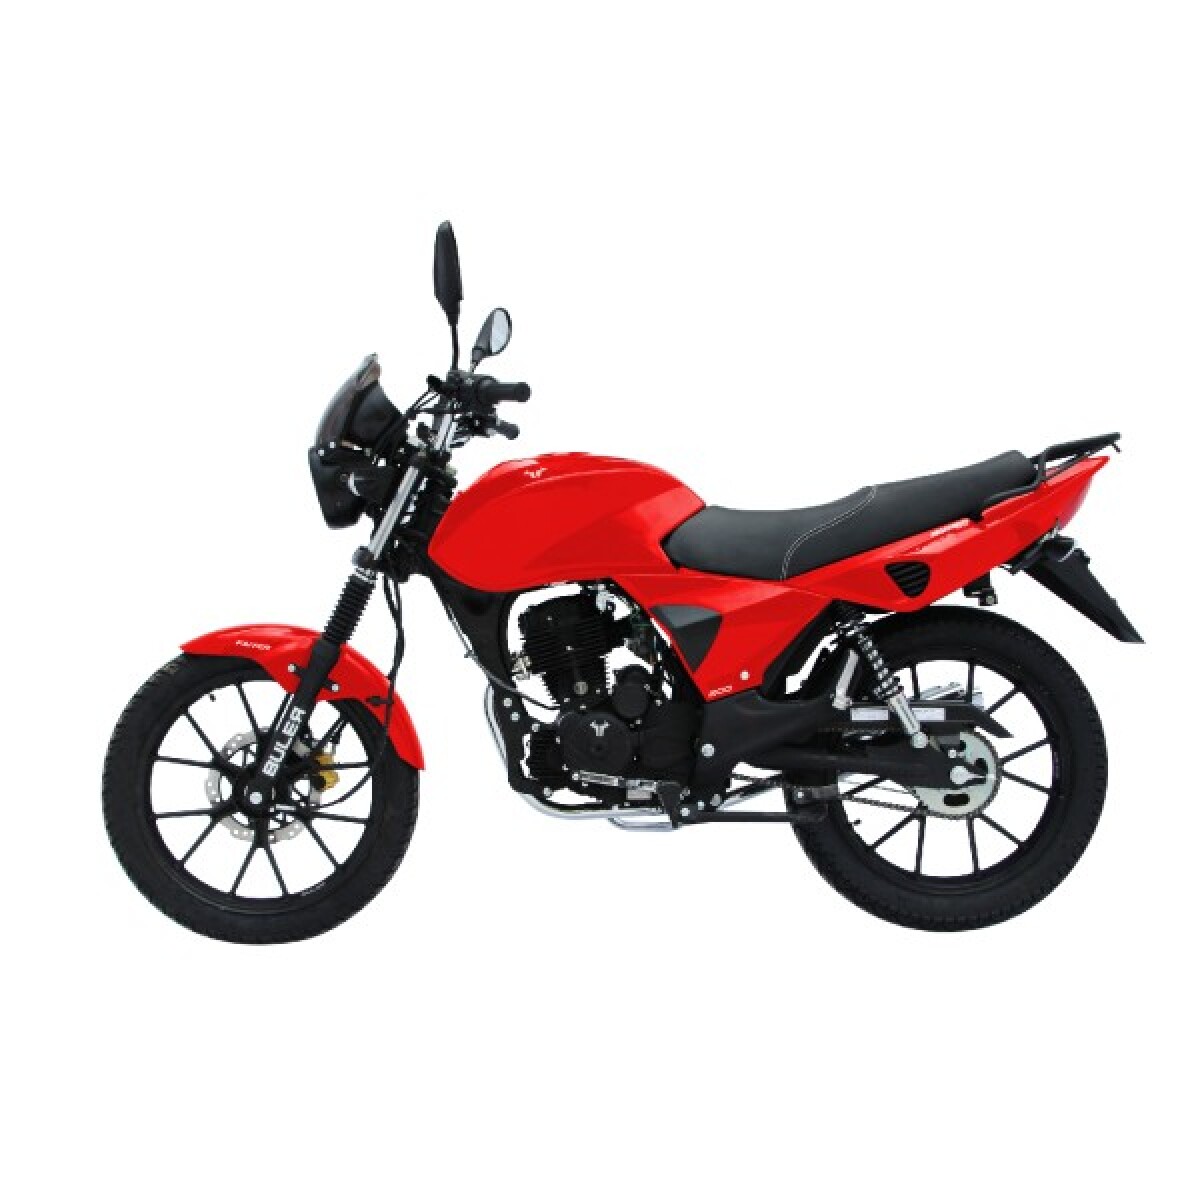 Motocicleta Buler Faiter 200cc - Aleación - Rojo 